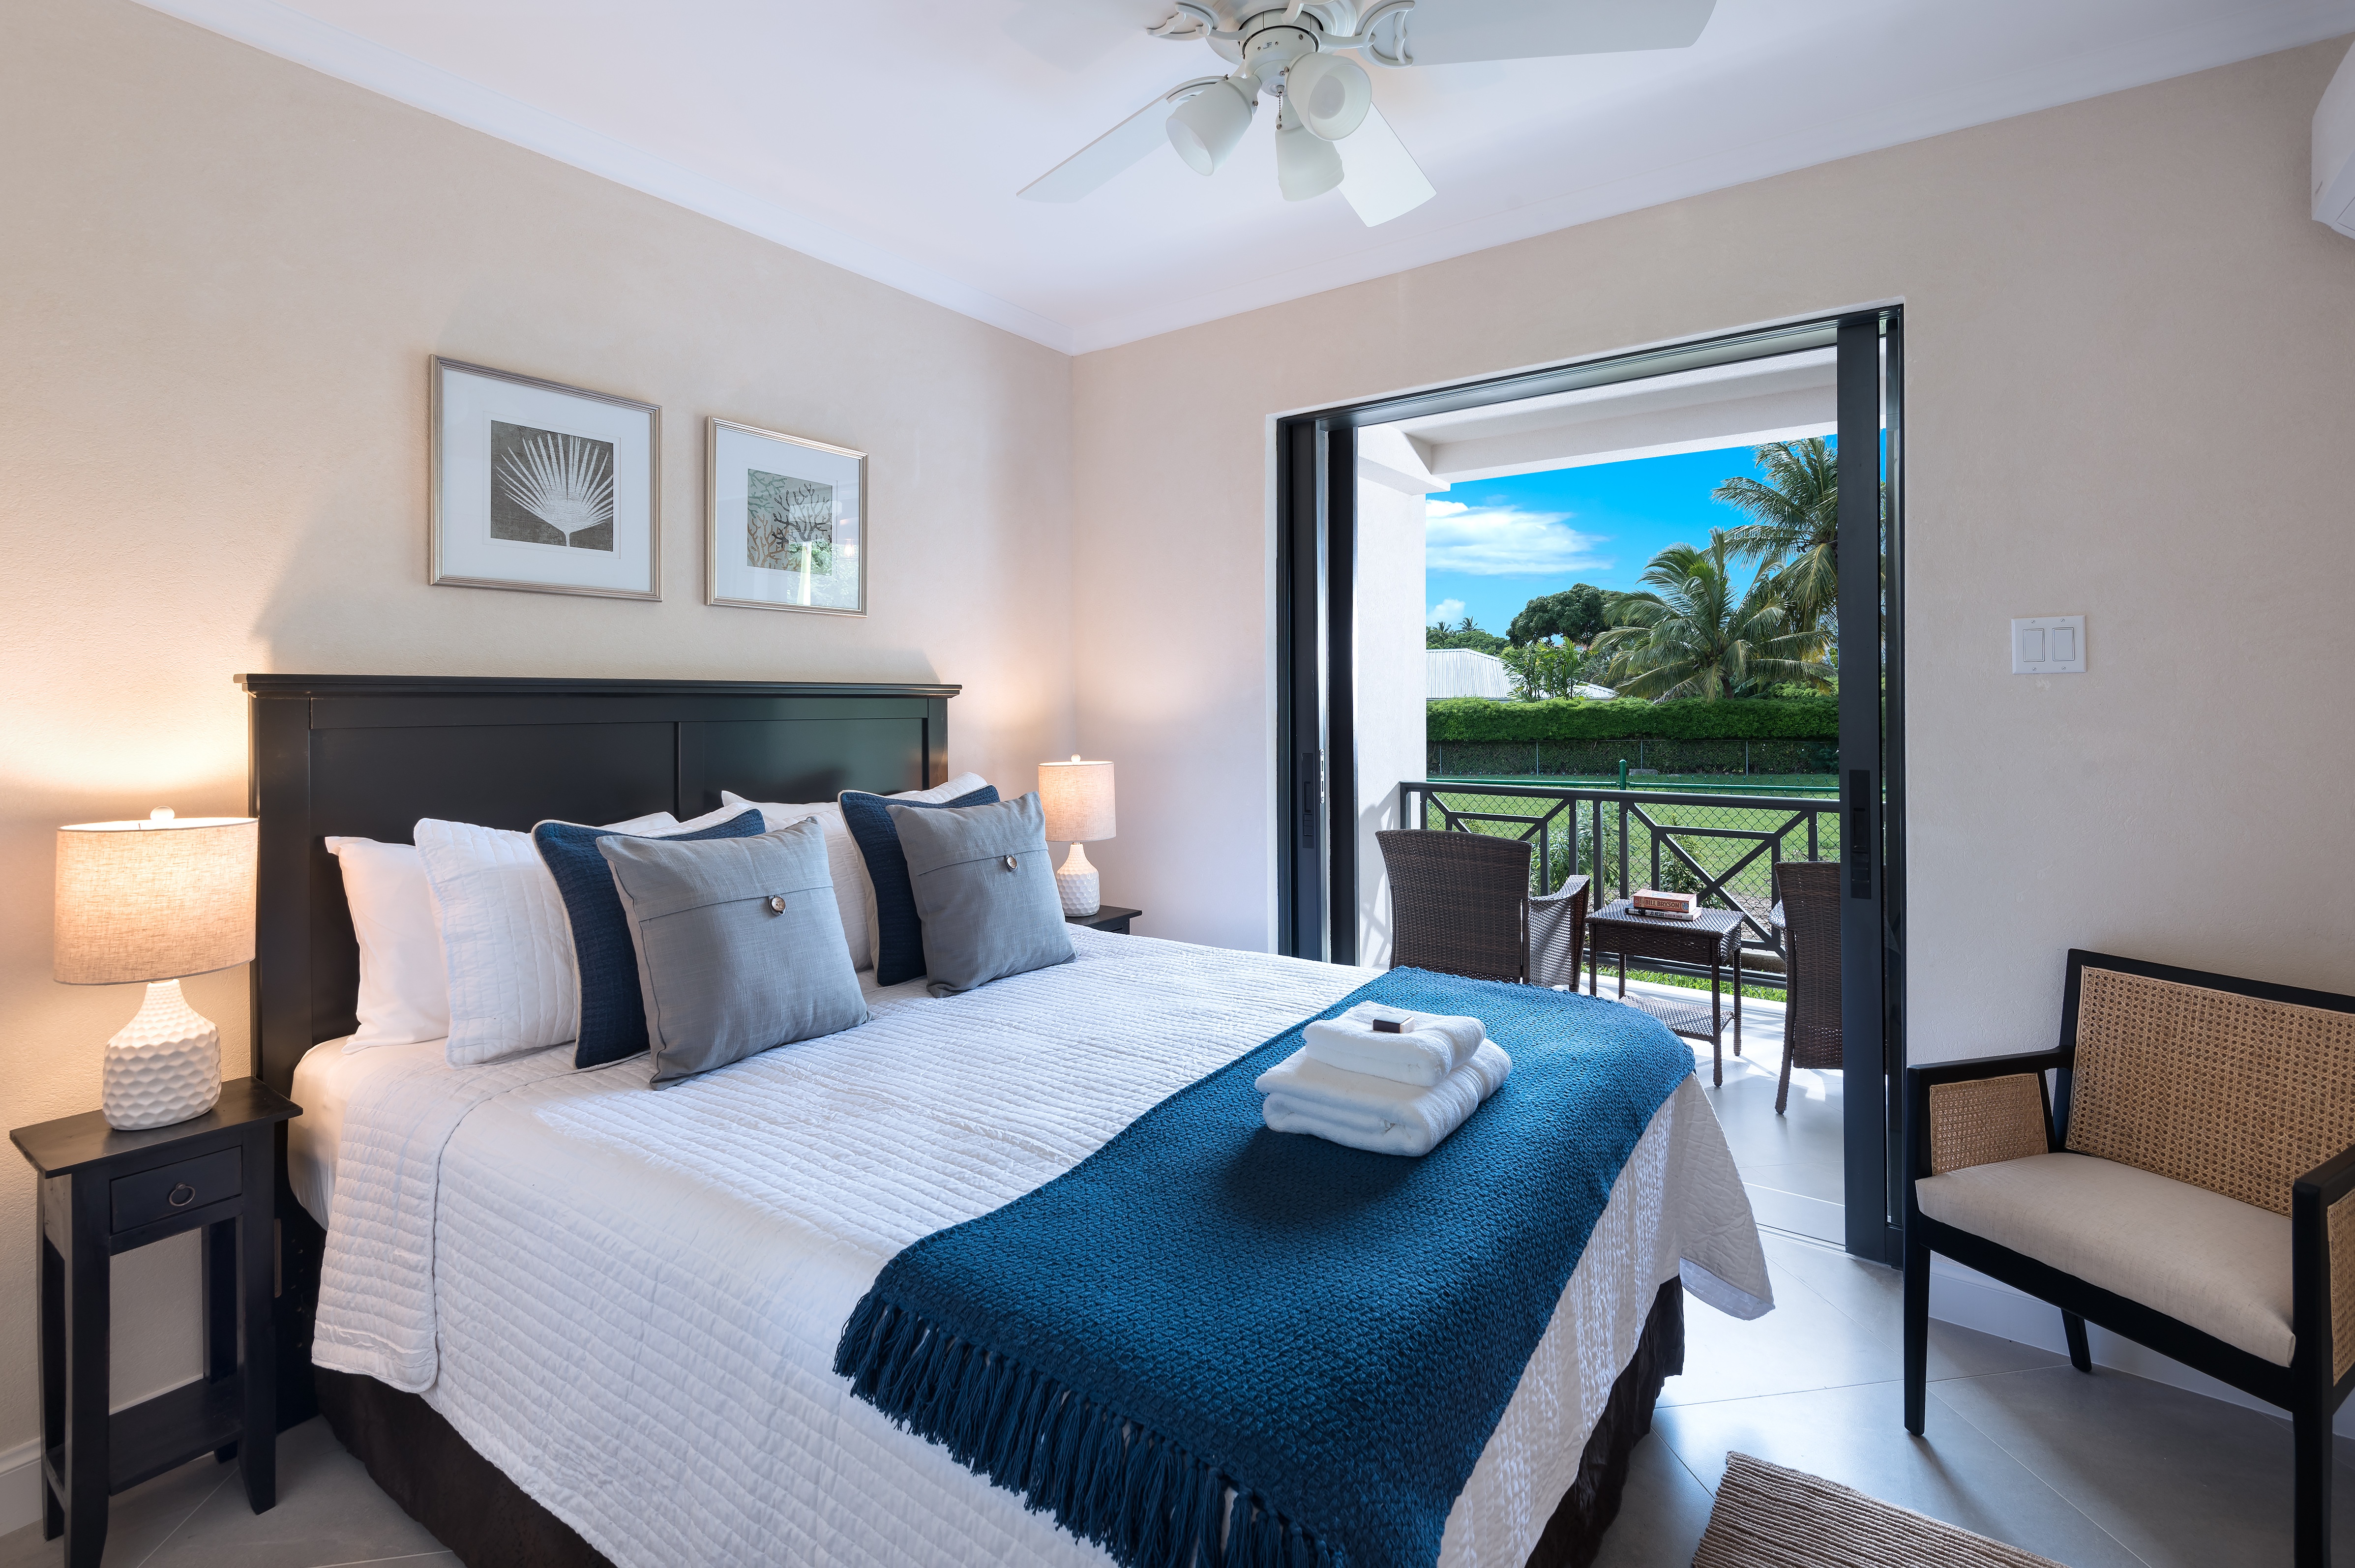 slaapkamer met uitzicht, Barbados vakantie, barbados, luxe appartement barbados,st. james, 2 of 4 personen